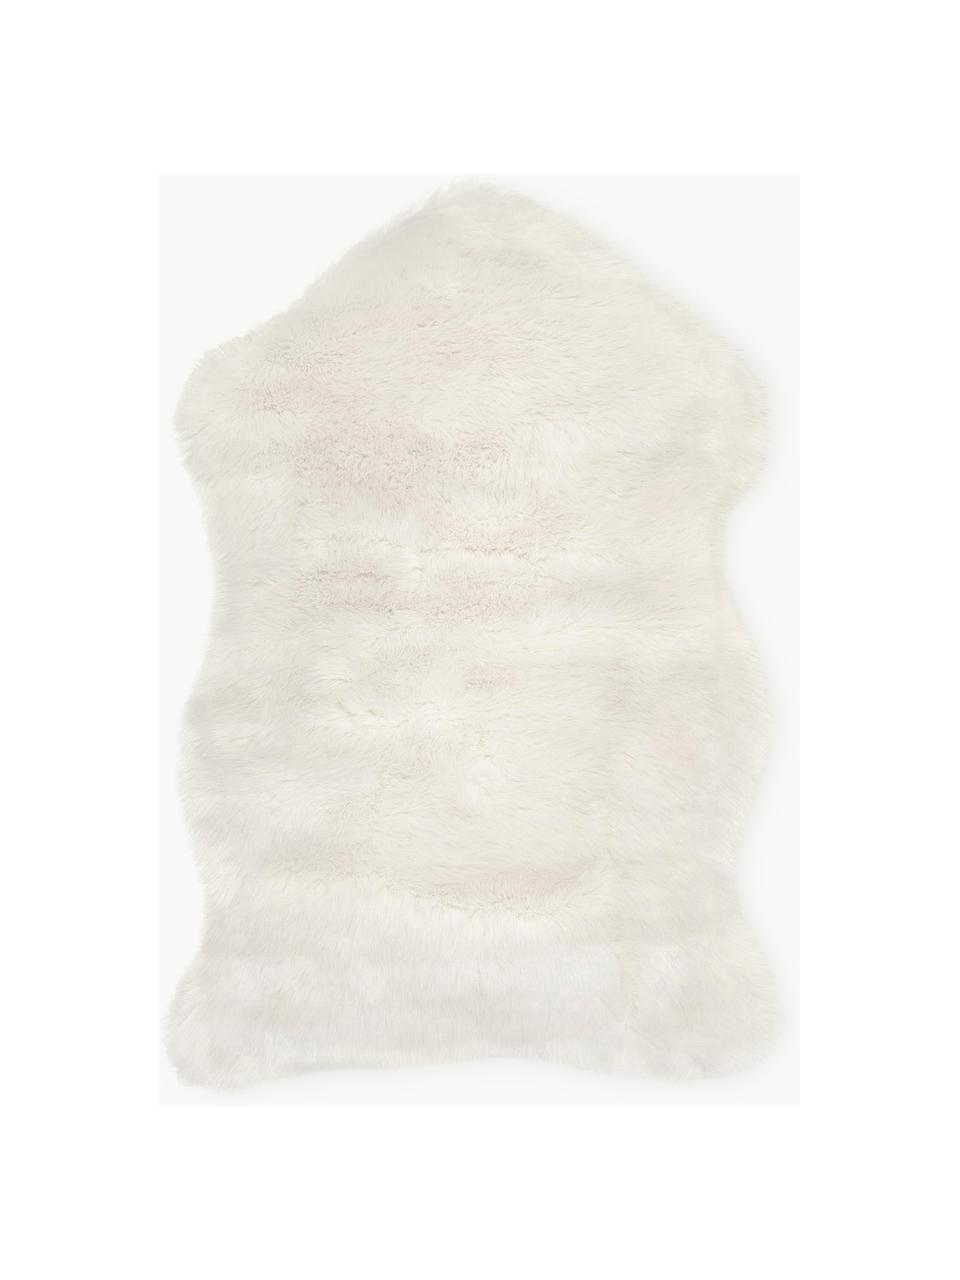 Fausse fourrure Mathilde, lisse, Blanc crème, larg. 60 x long. 90 cm